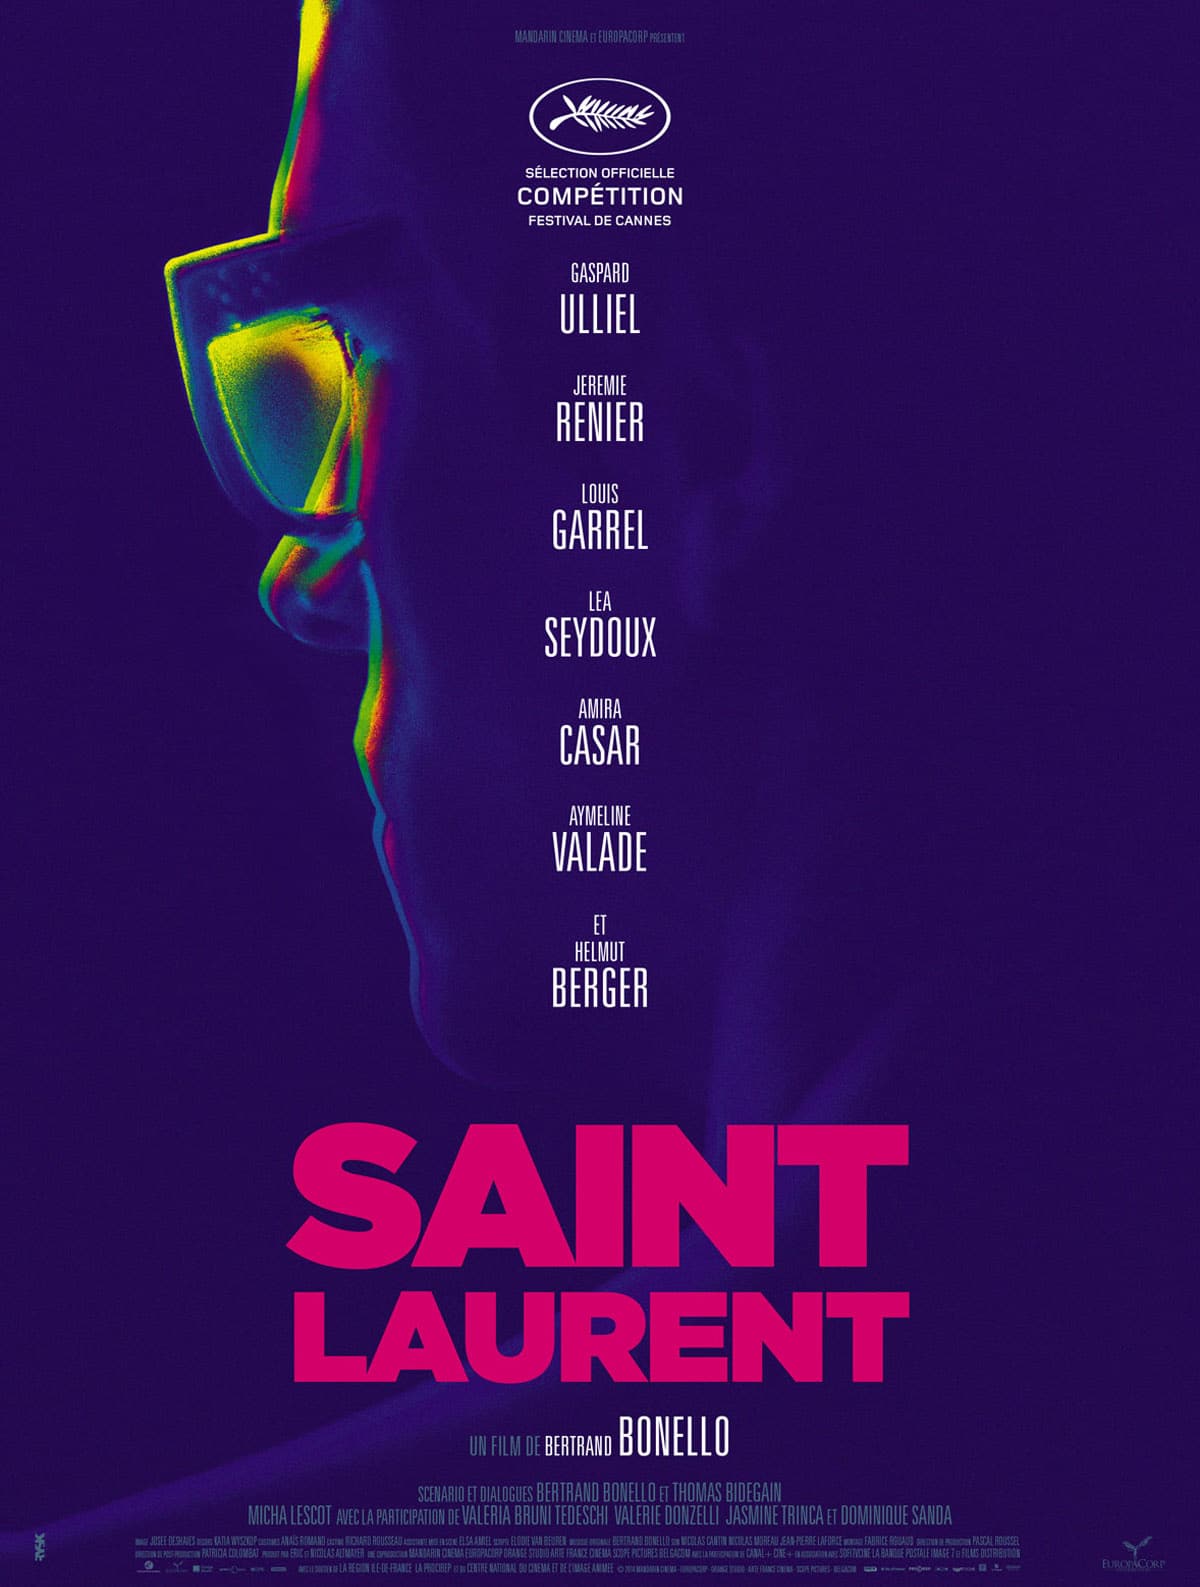 Saint Laurent, le film de Bertrand Bonello